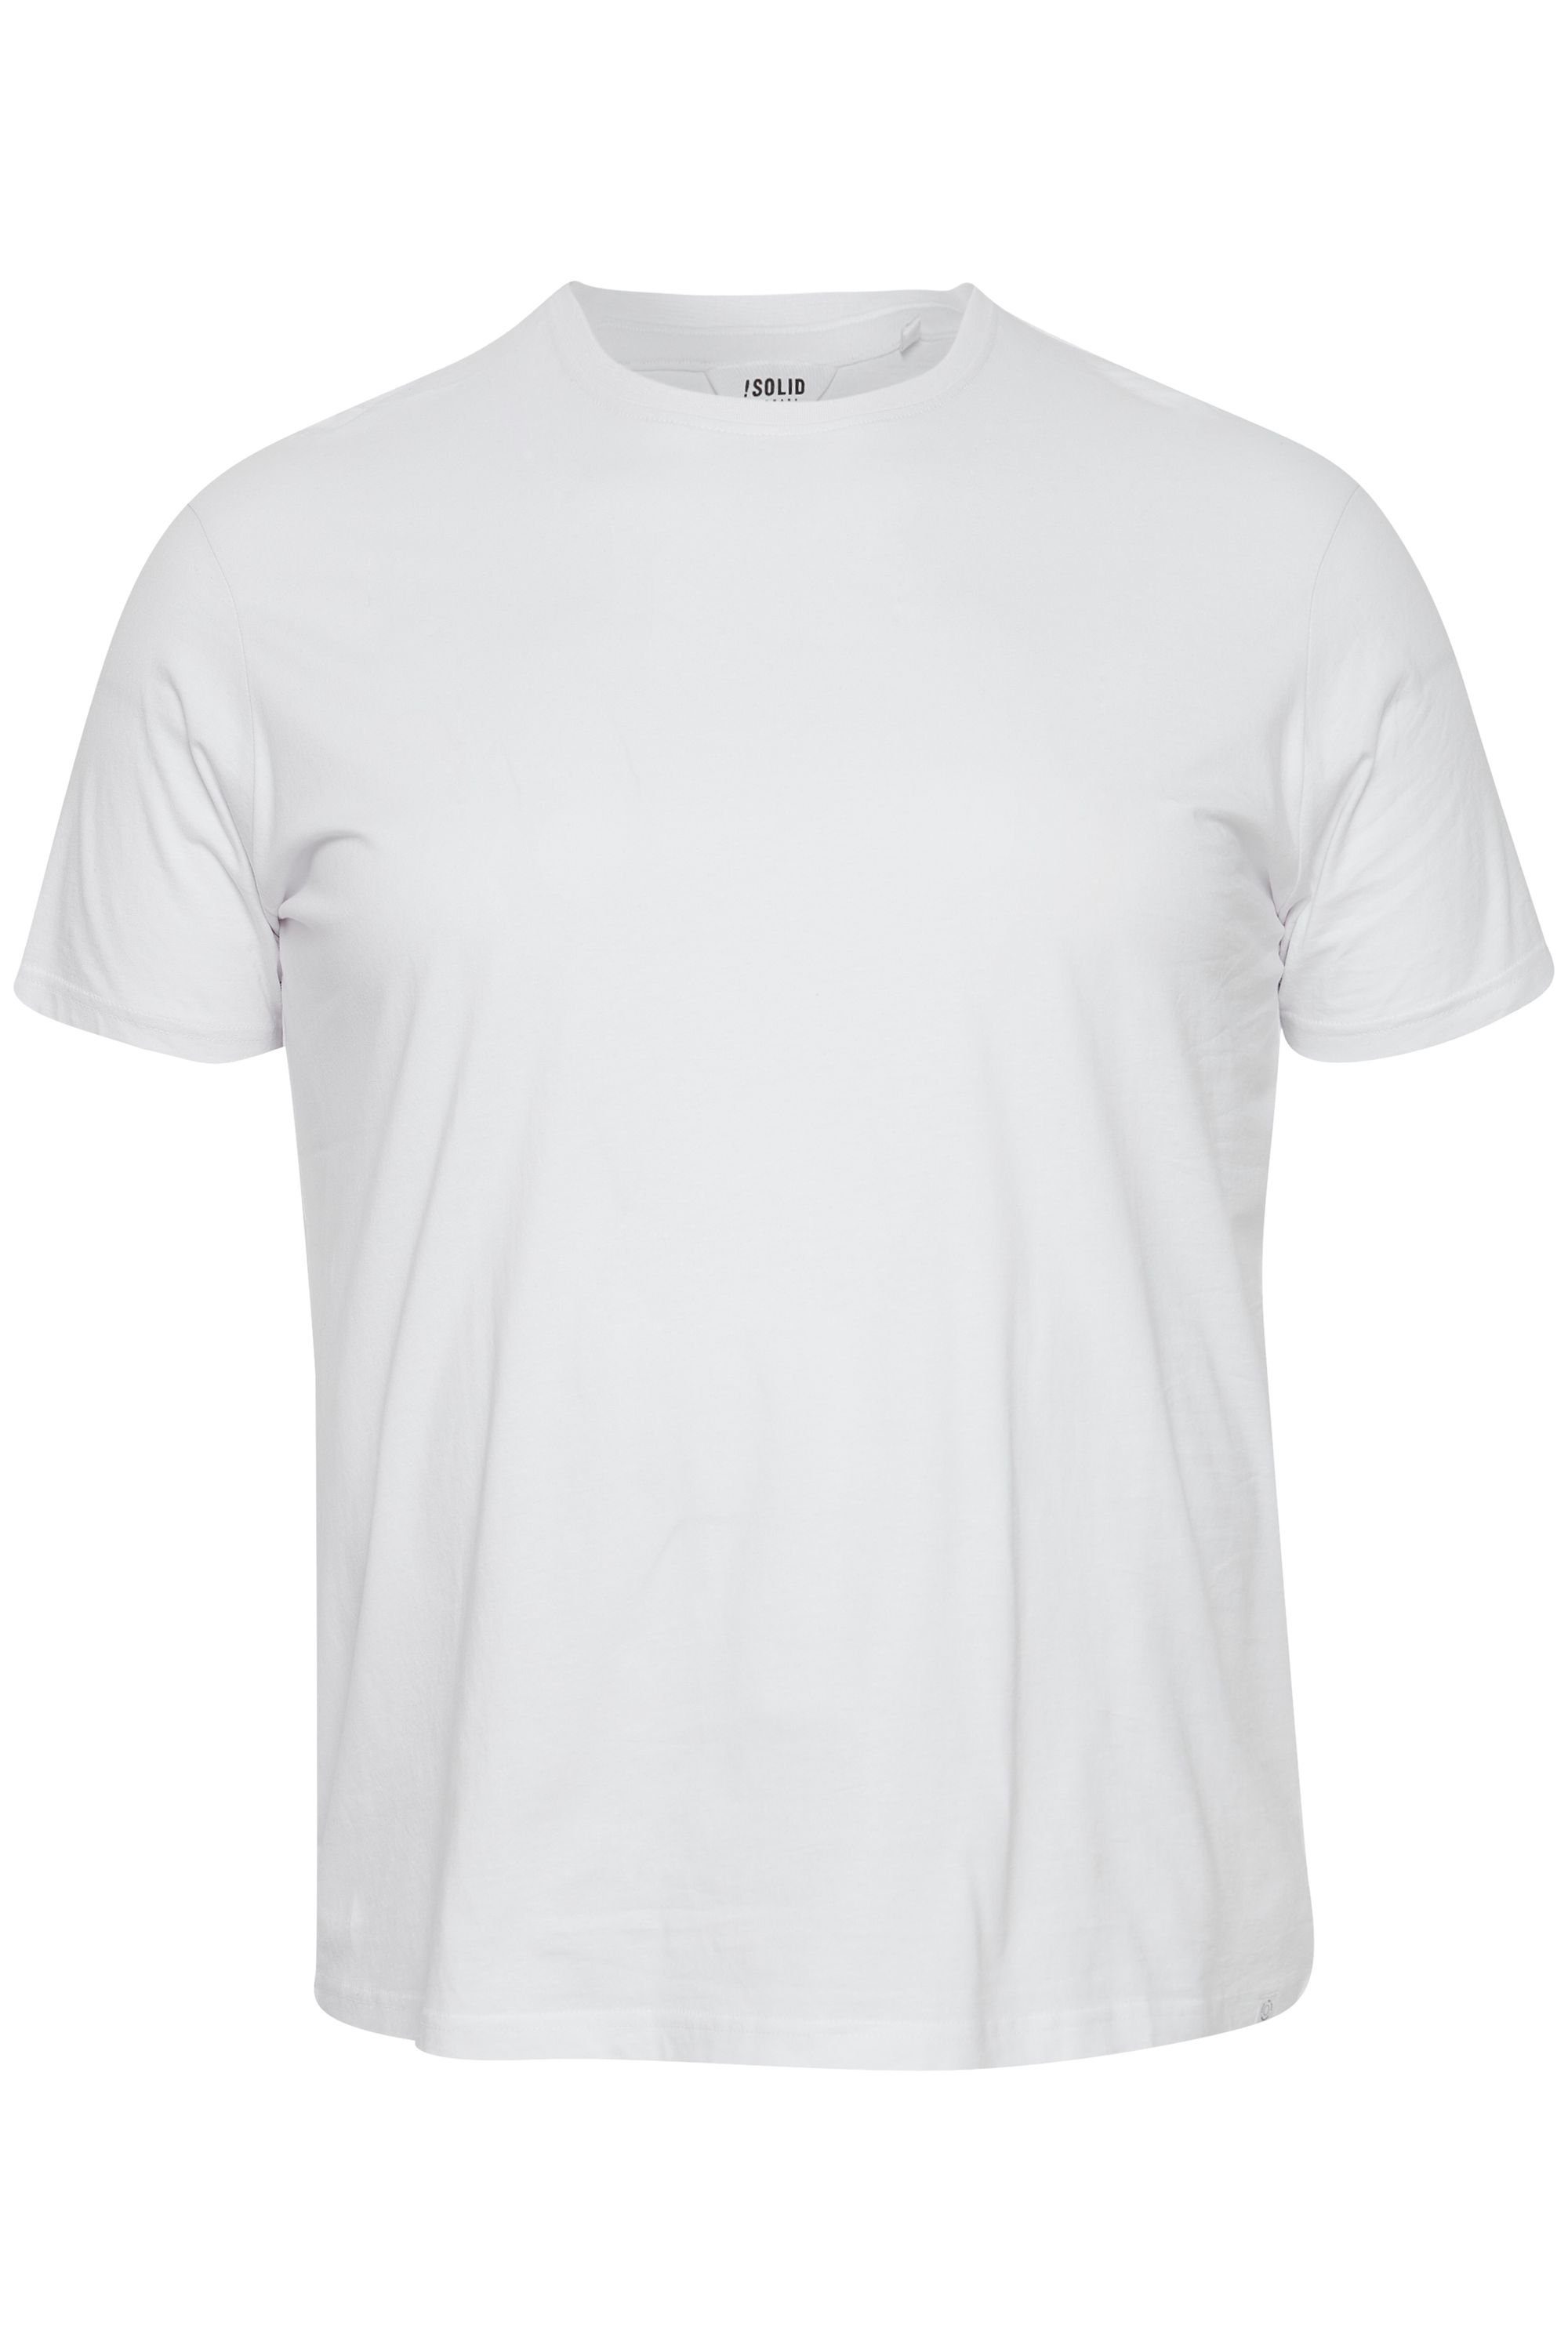 !Solid SDBedonno BT White (110601) T-Shirt